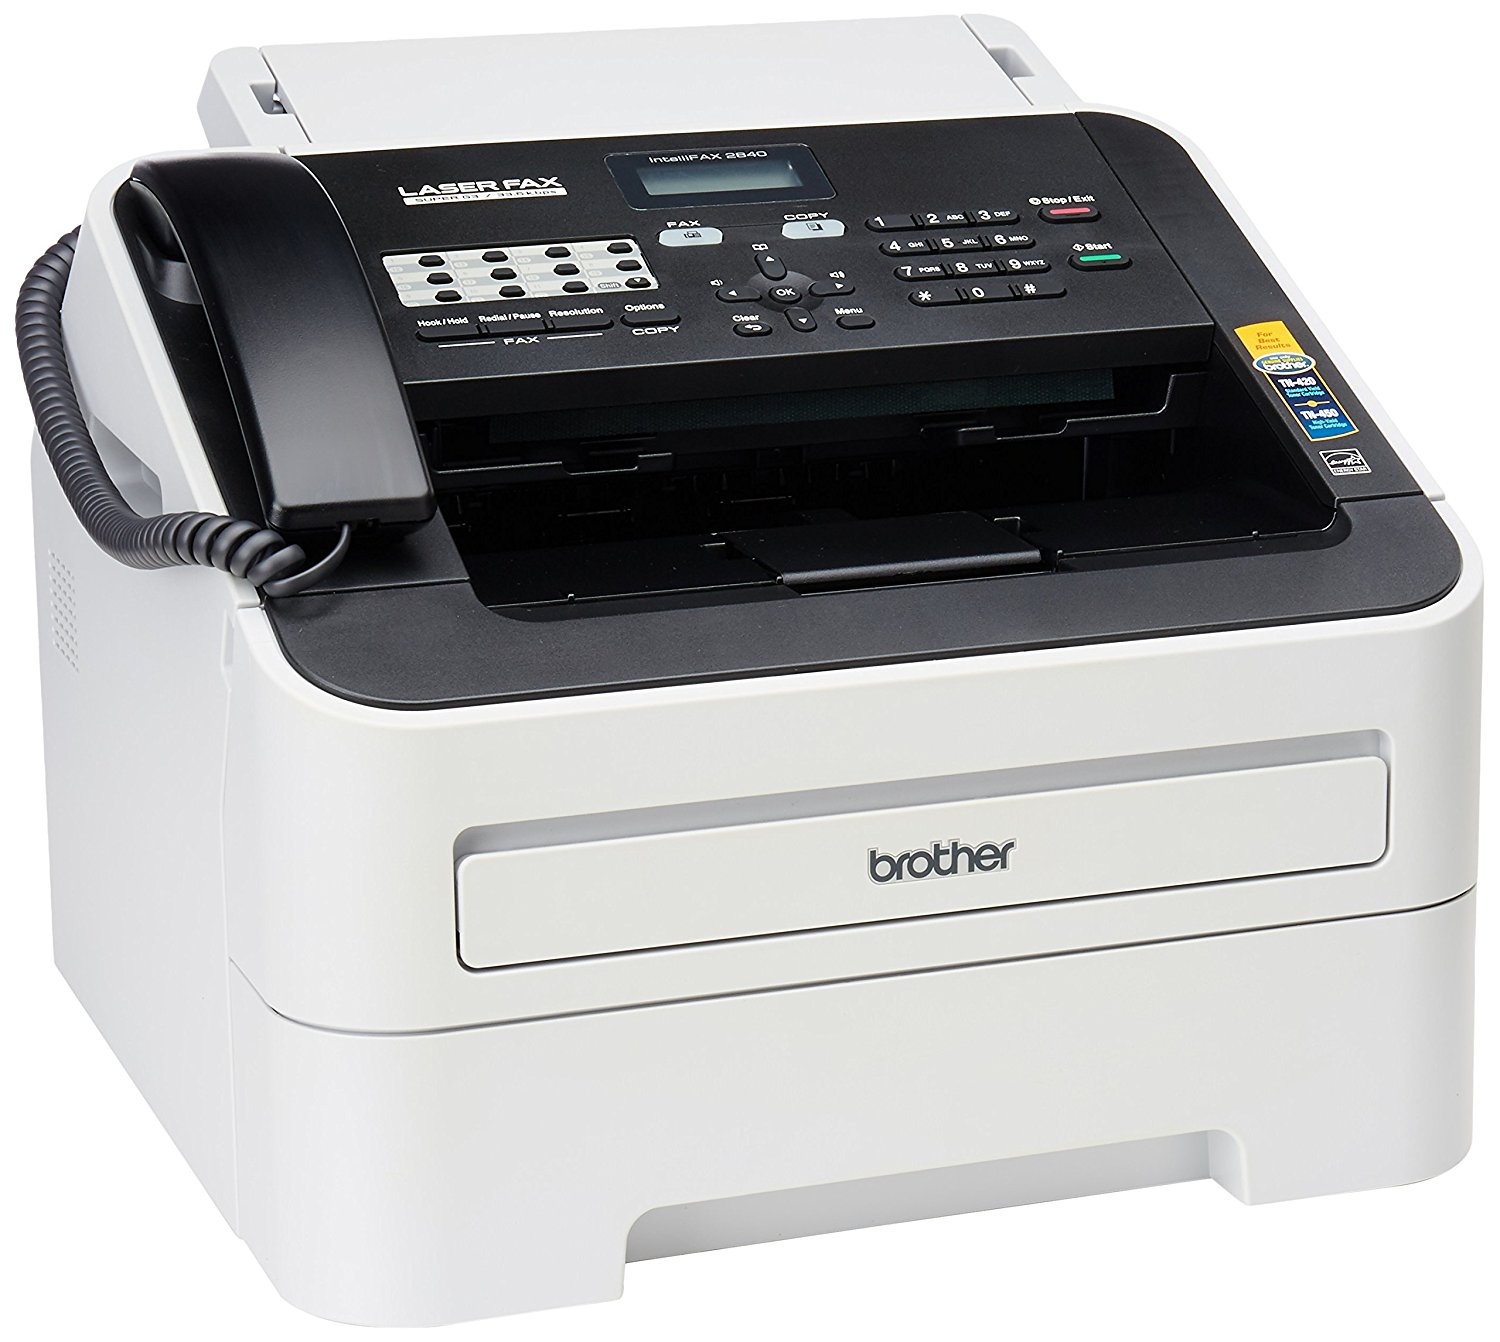 Brother Printer भाई FAX-2840 हाई स्पीड मोनो लेजर फैक्स मशीन